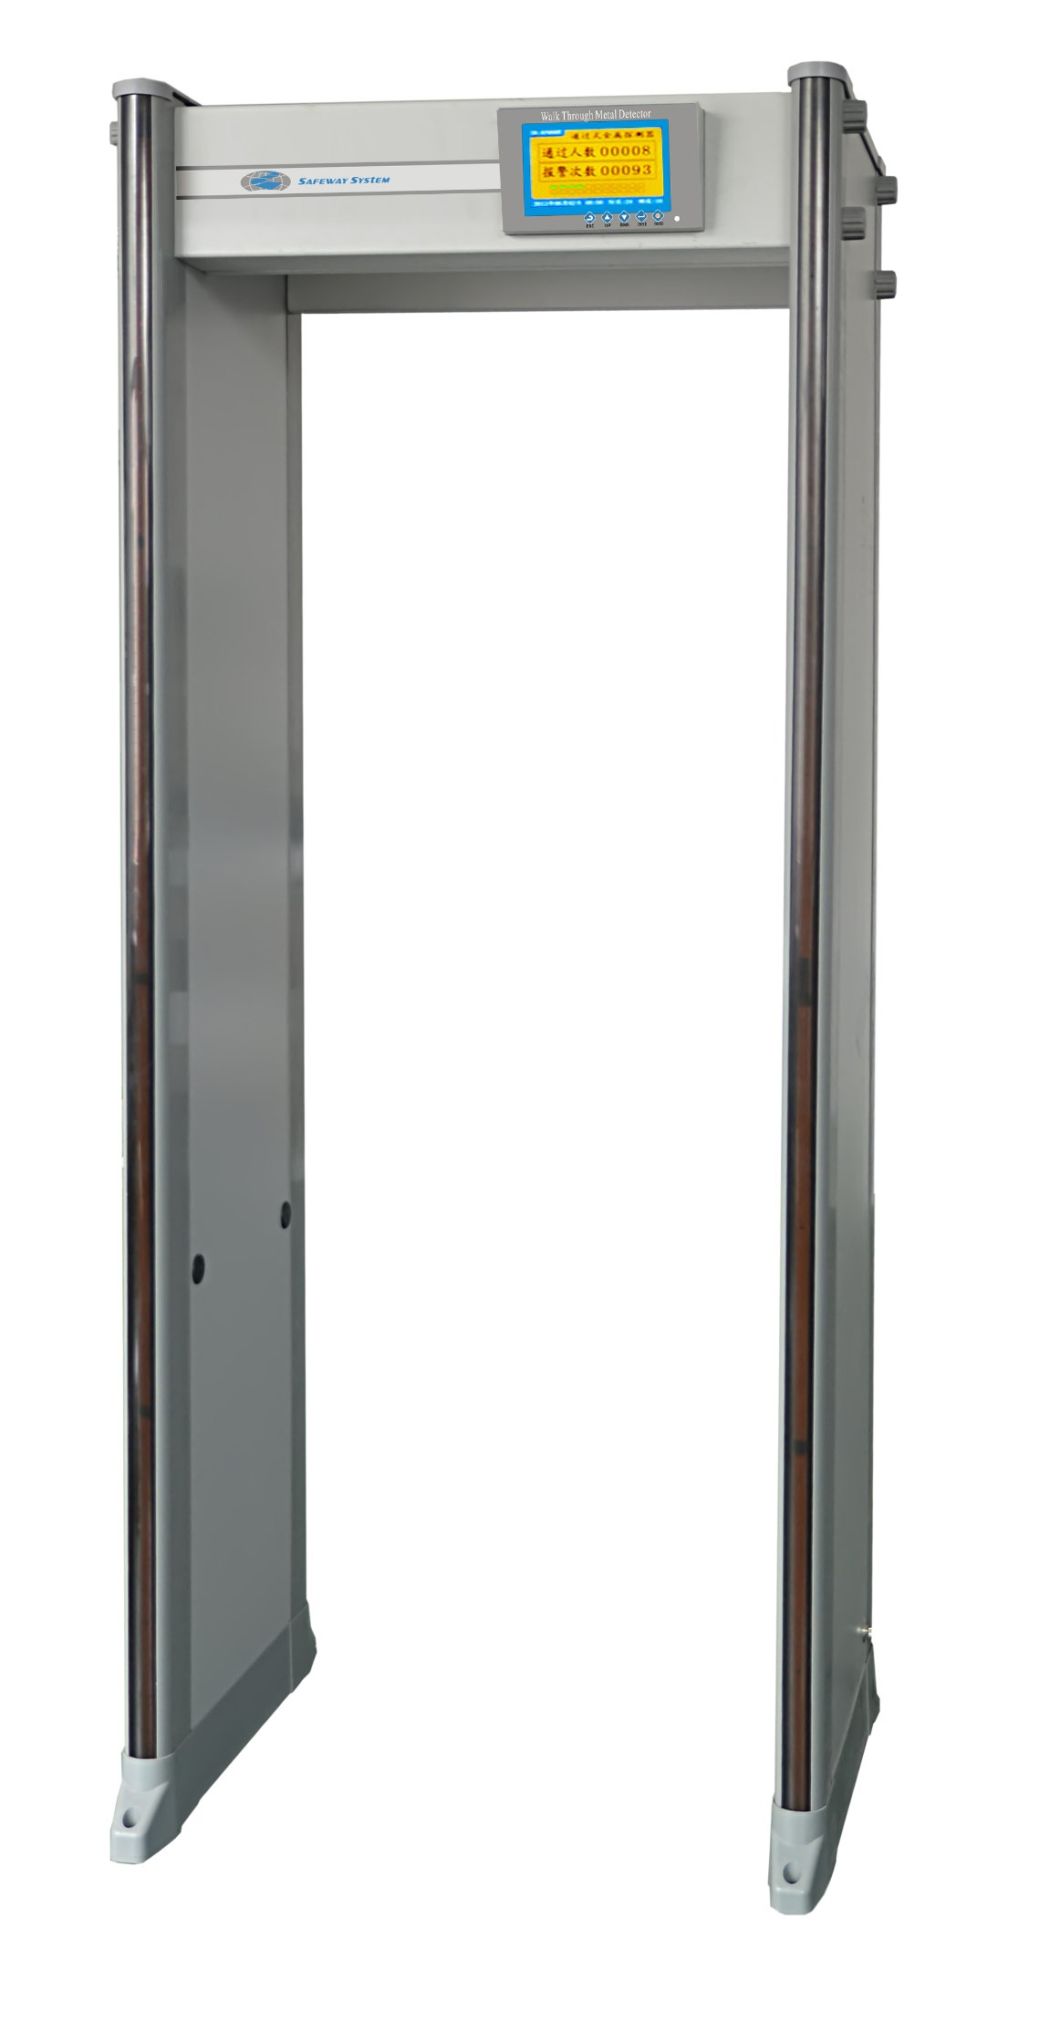 New Design IP65 Waterproof 33 Zones Security Door Frame Metal Detector Gate with 7